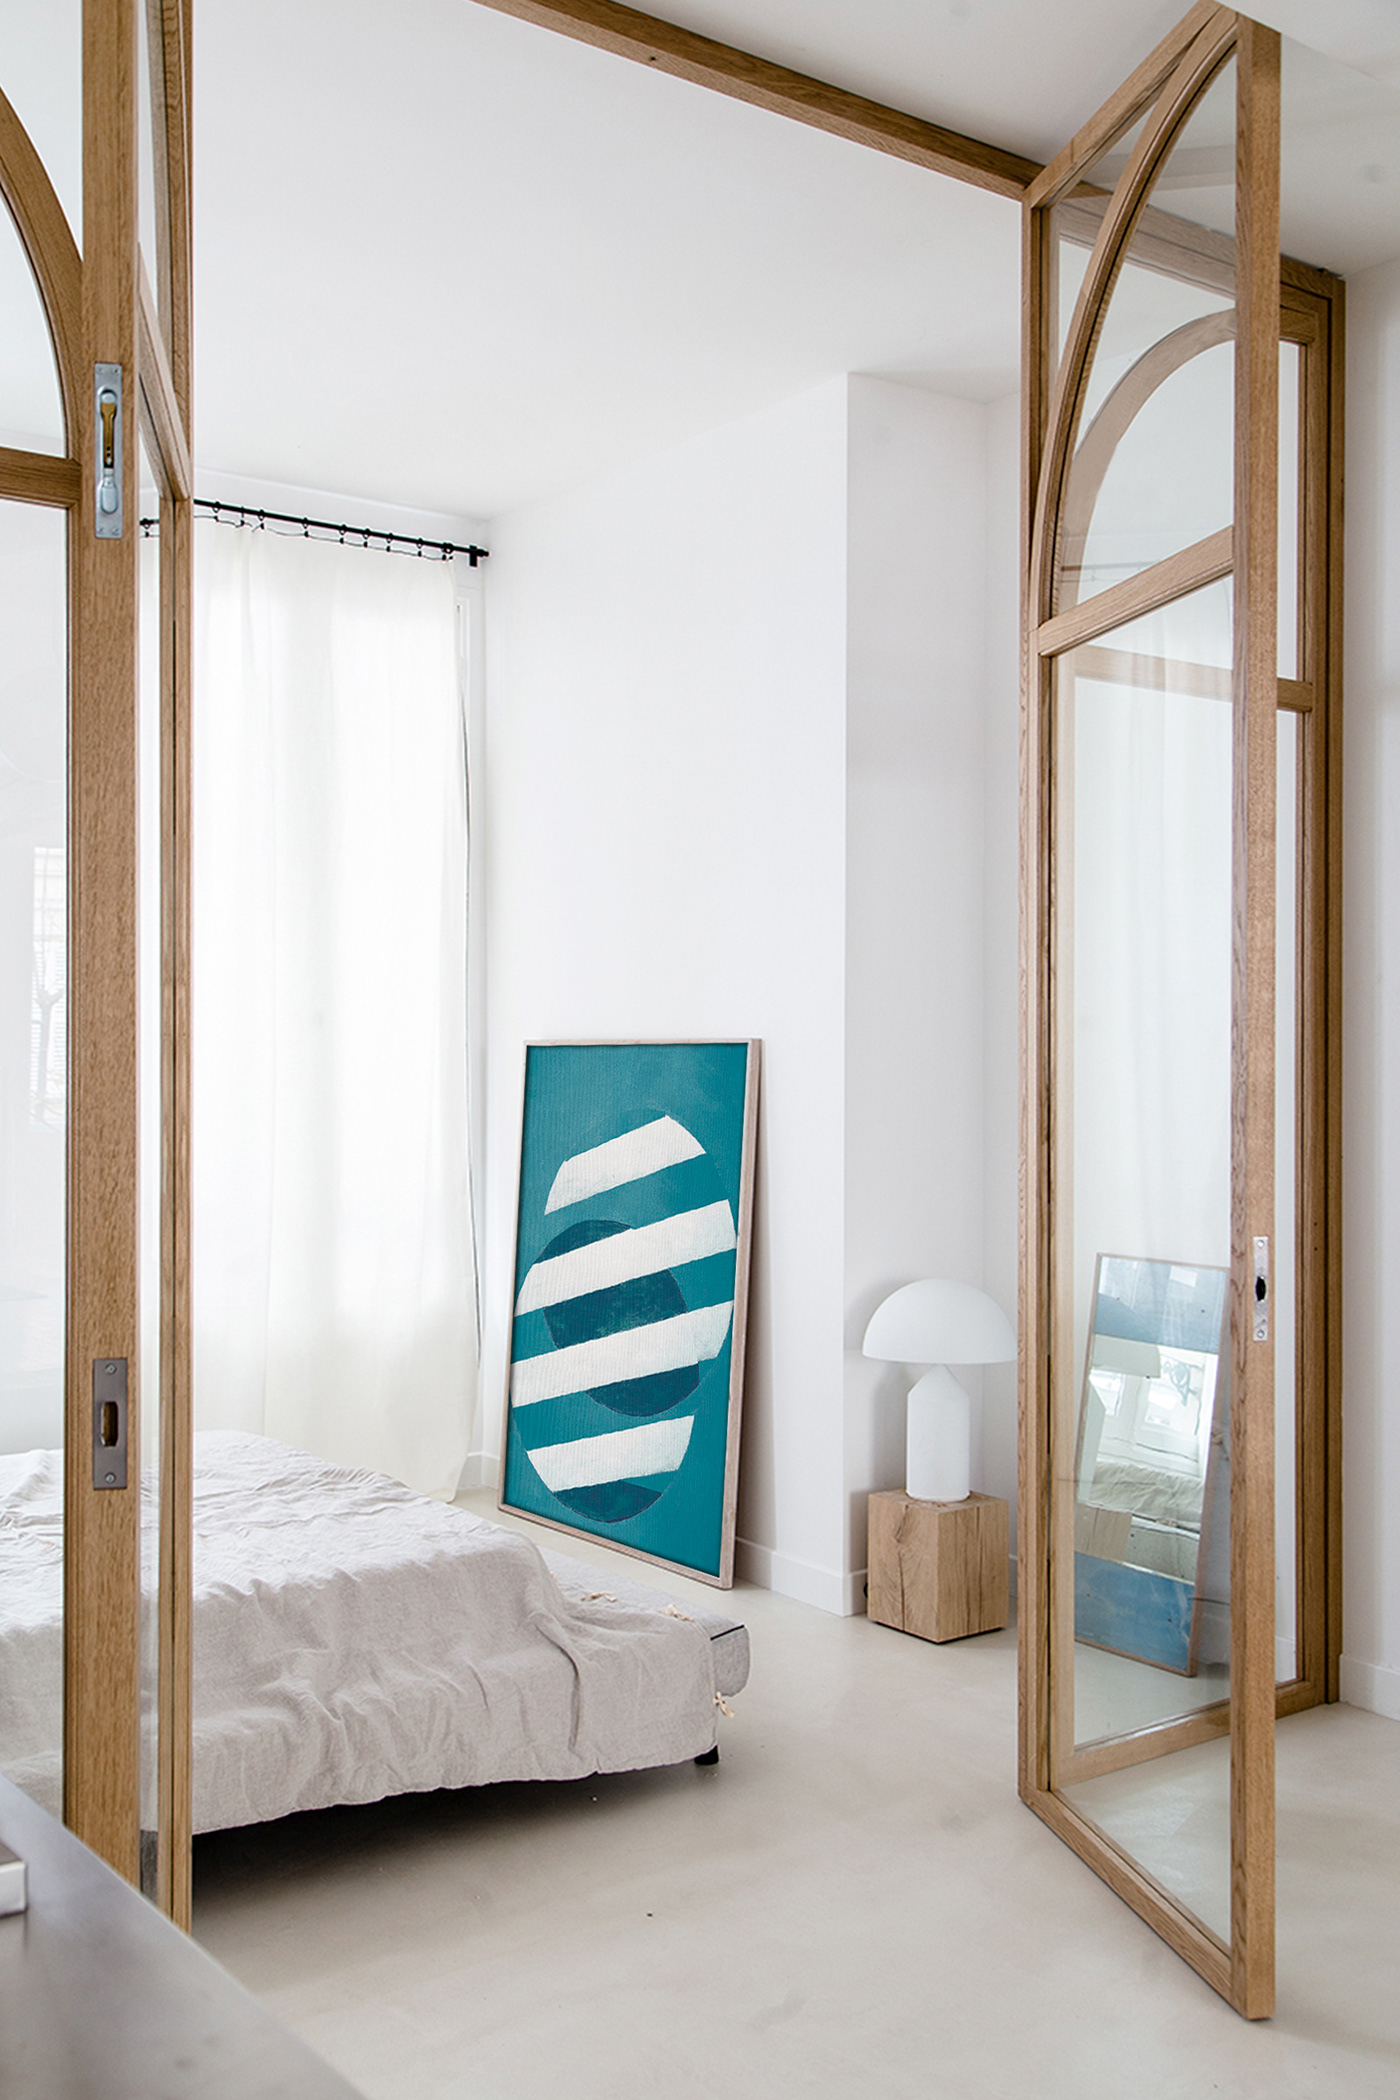 Digital Art  decor Interior modern minimalist simple clean elegant minimal